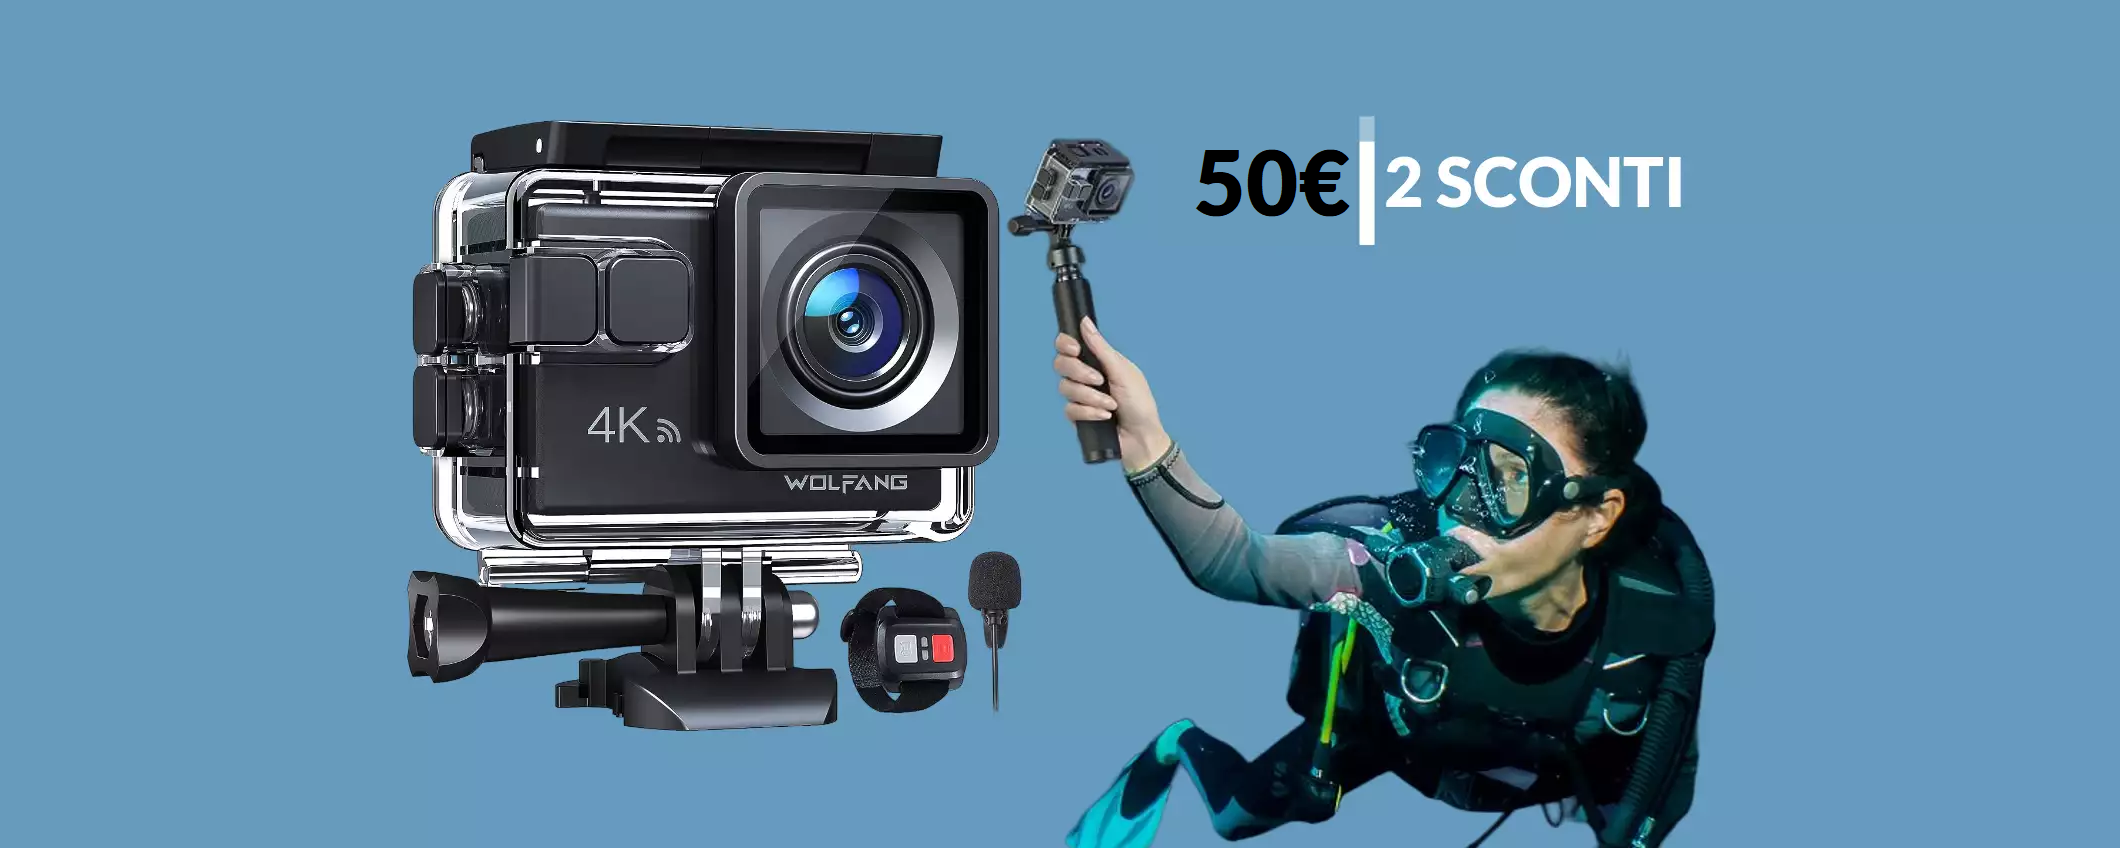 Action cam 4K a soli 50€ con 2 SCONTI: foto e video PERFETTI